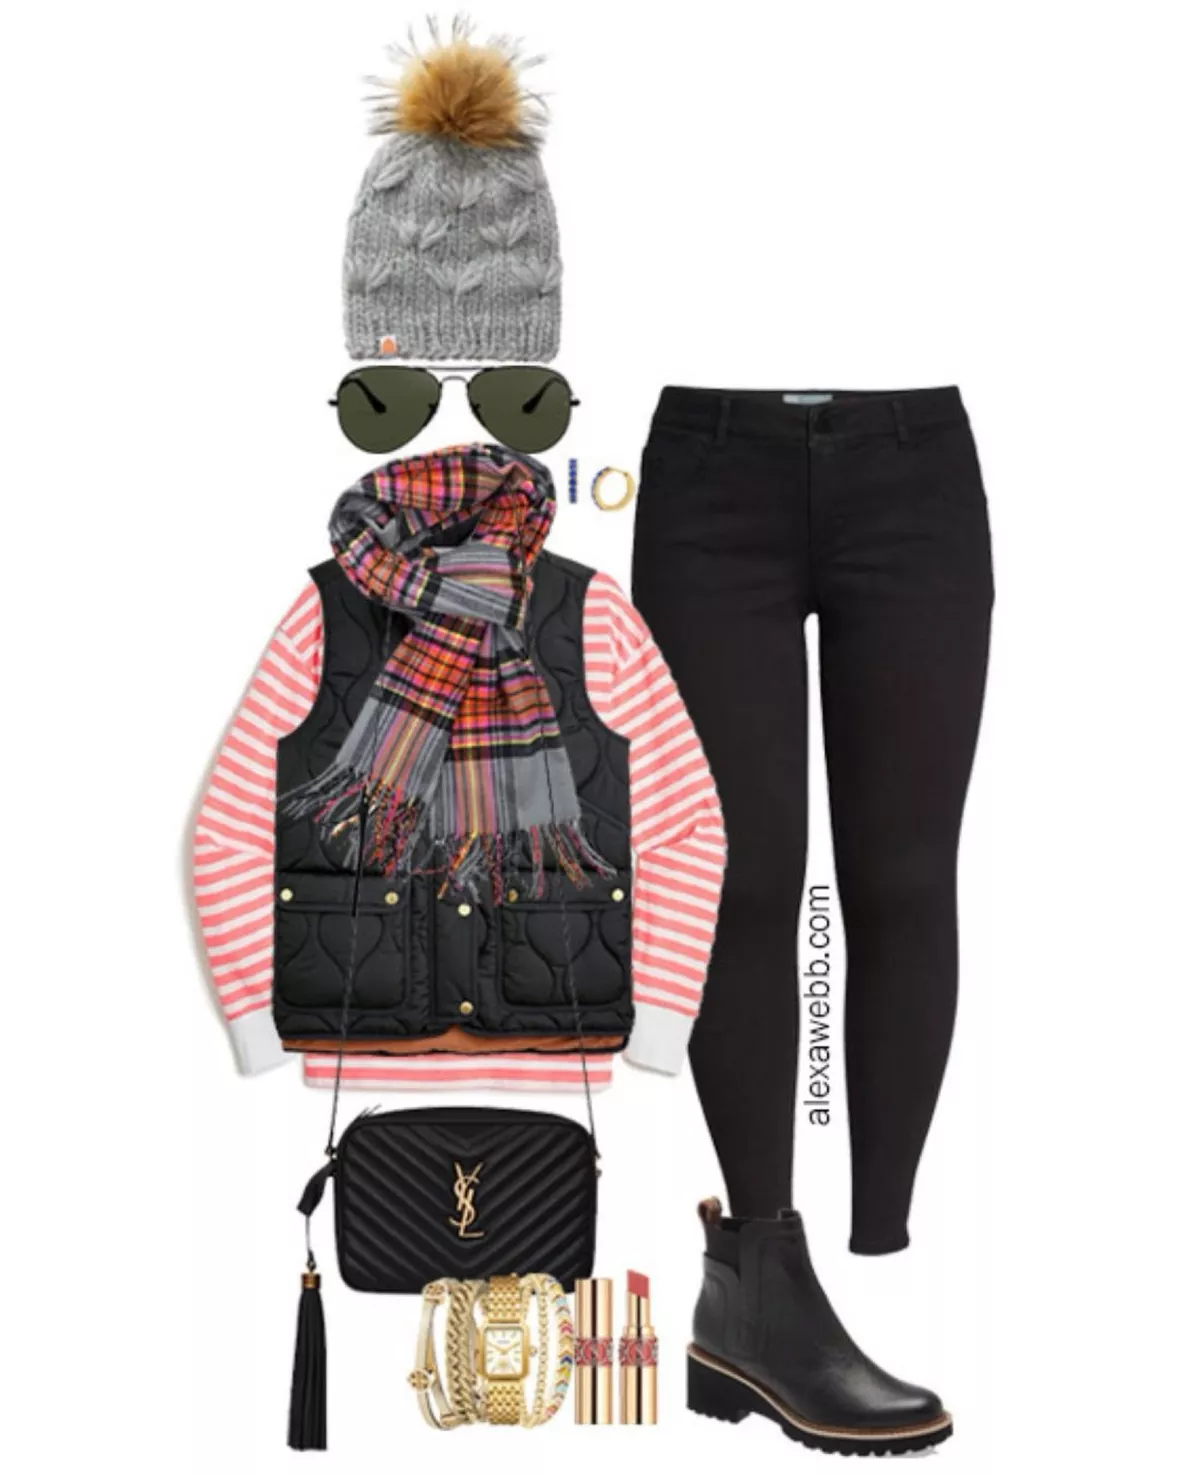 Plus Size Outfit Idea - Black & Tan - Alexa Webb